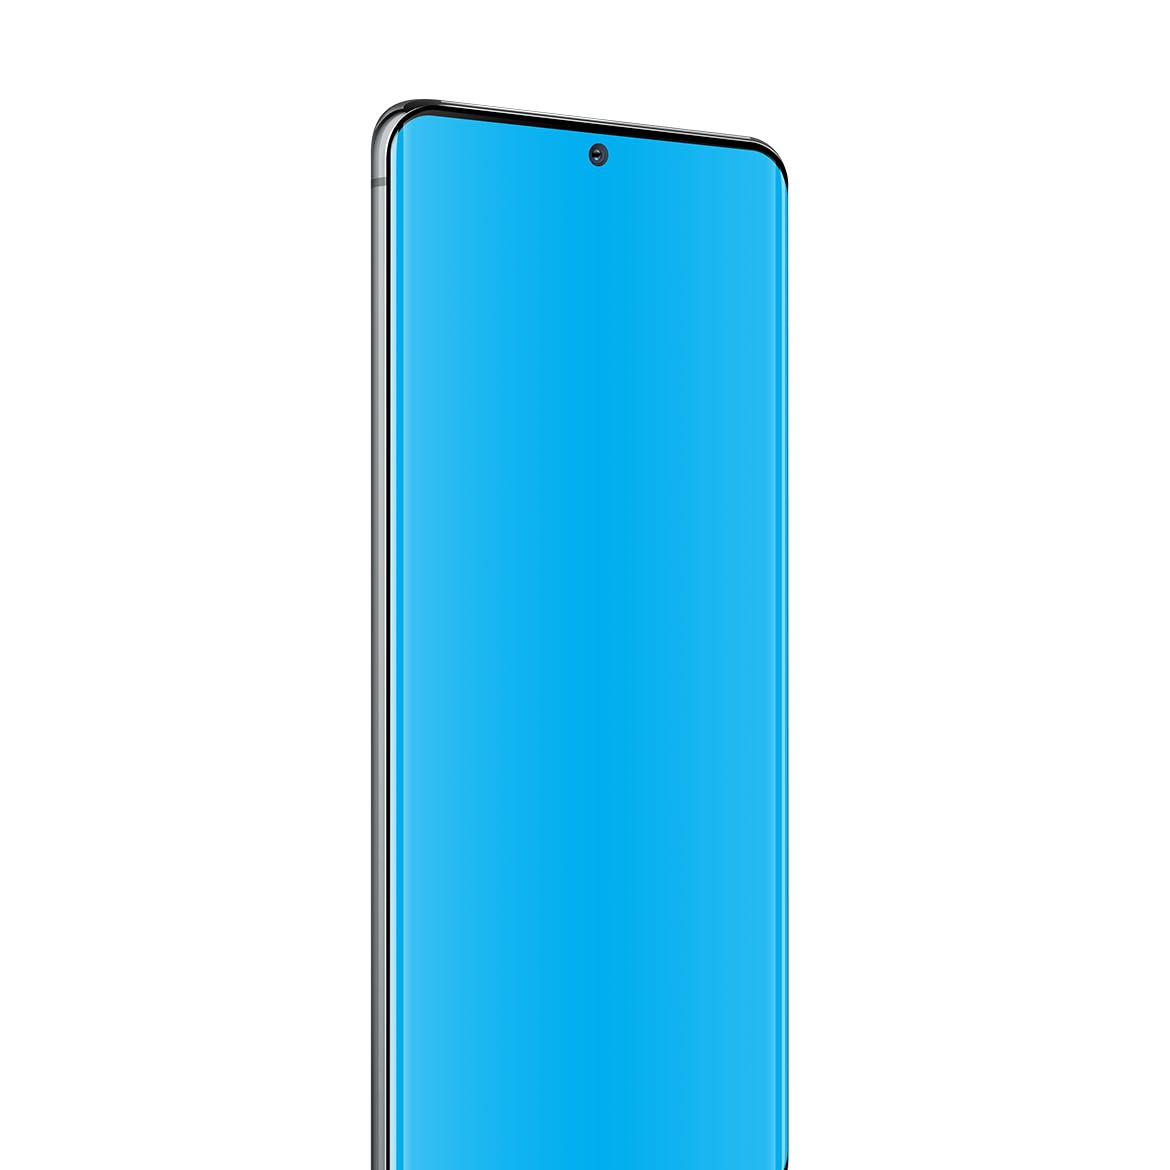 三星Galaxy S20 Ultra智能手机UI设计屏幕预览第一素材精选样机 S20 Ultra Layered PSD Mockups插图(3)